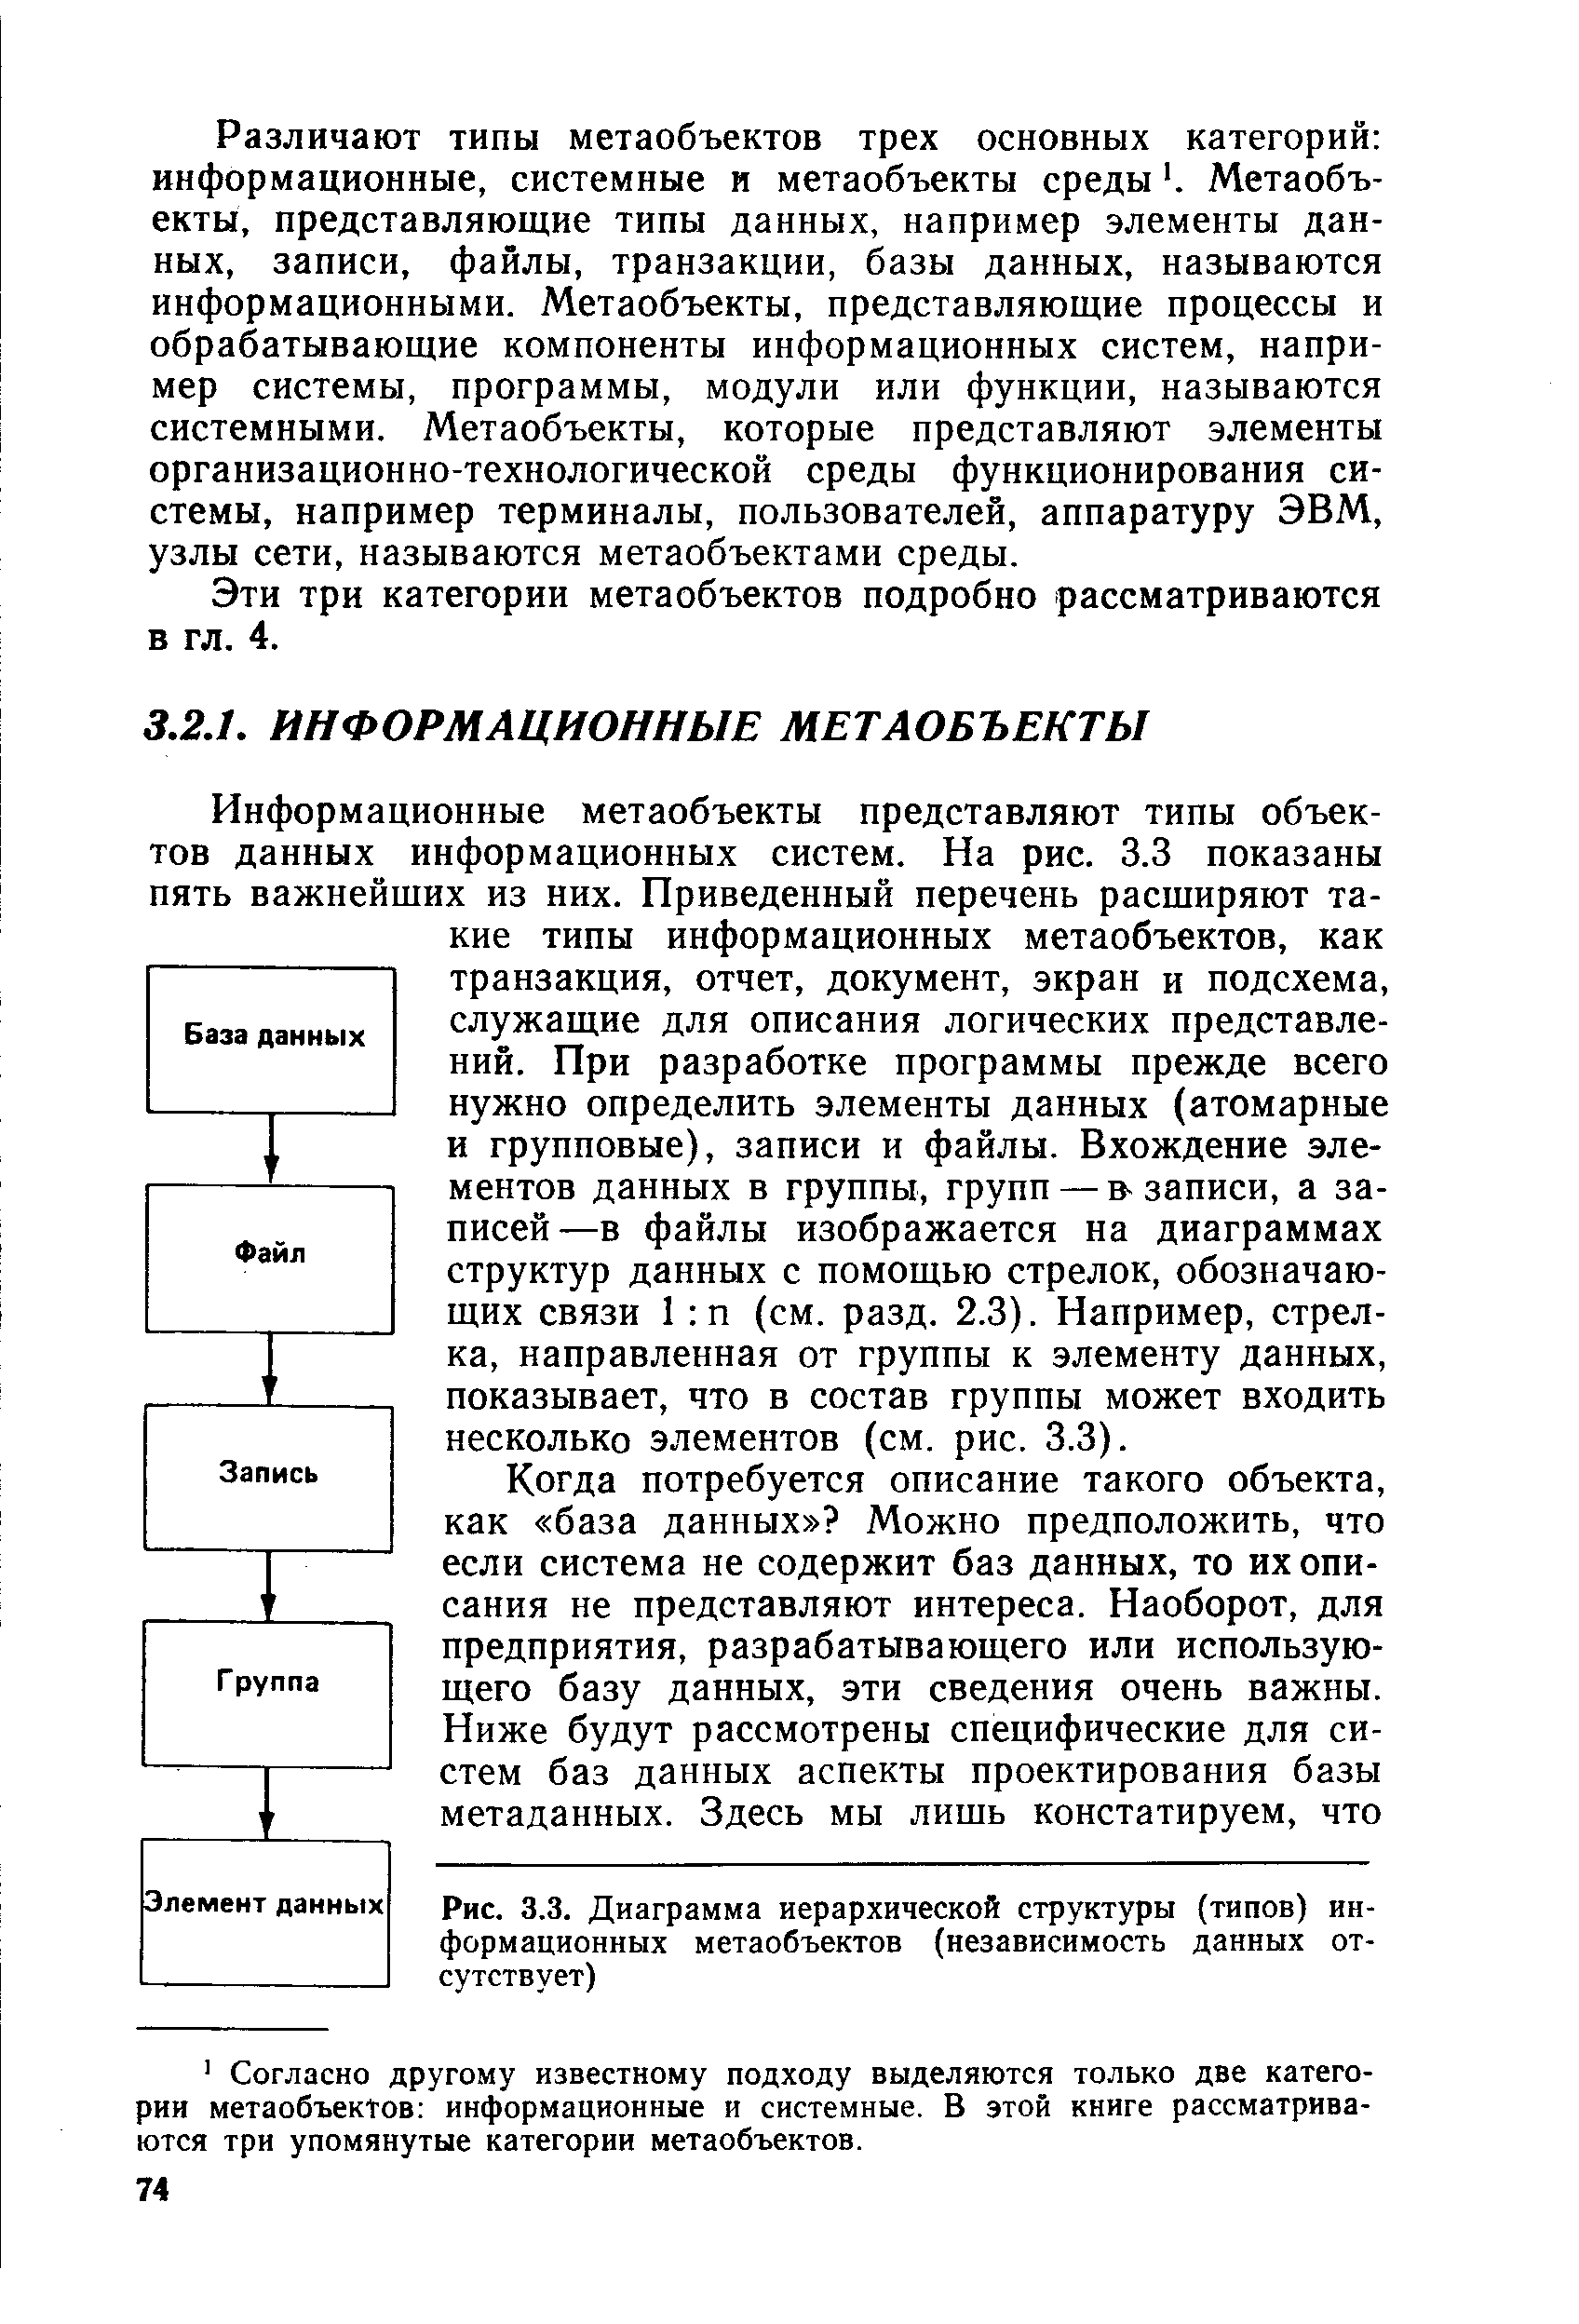 Рис. 3.3. Диаграмма иерархической структуры (типов) информационных метаобъектов (независимость данных отсутствует)
